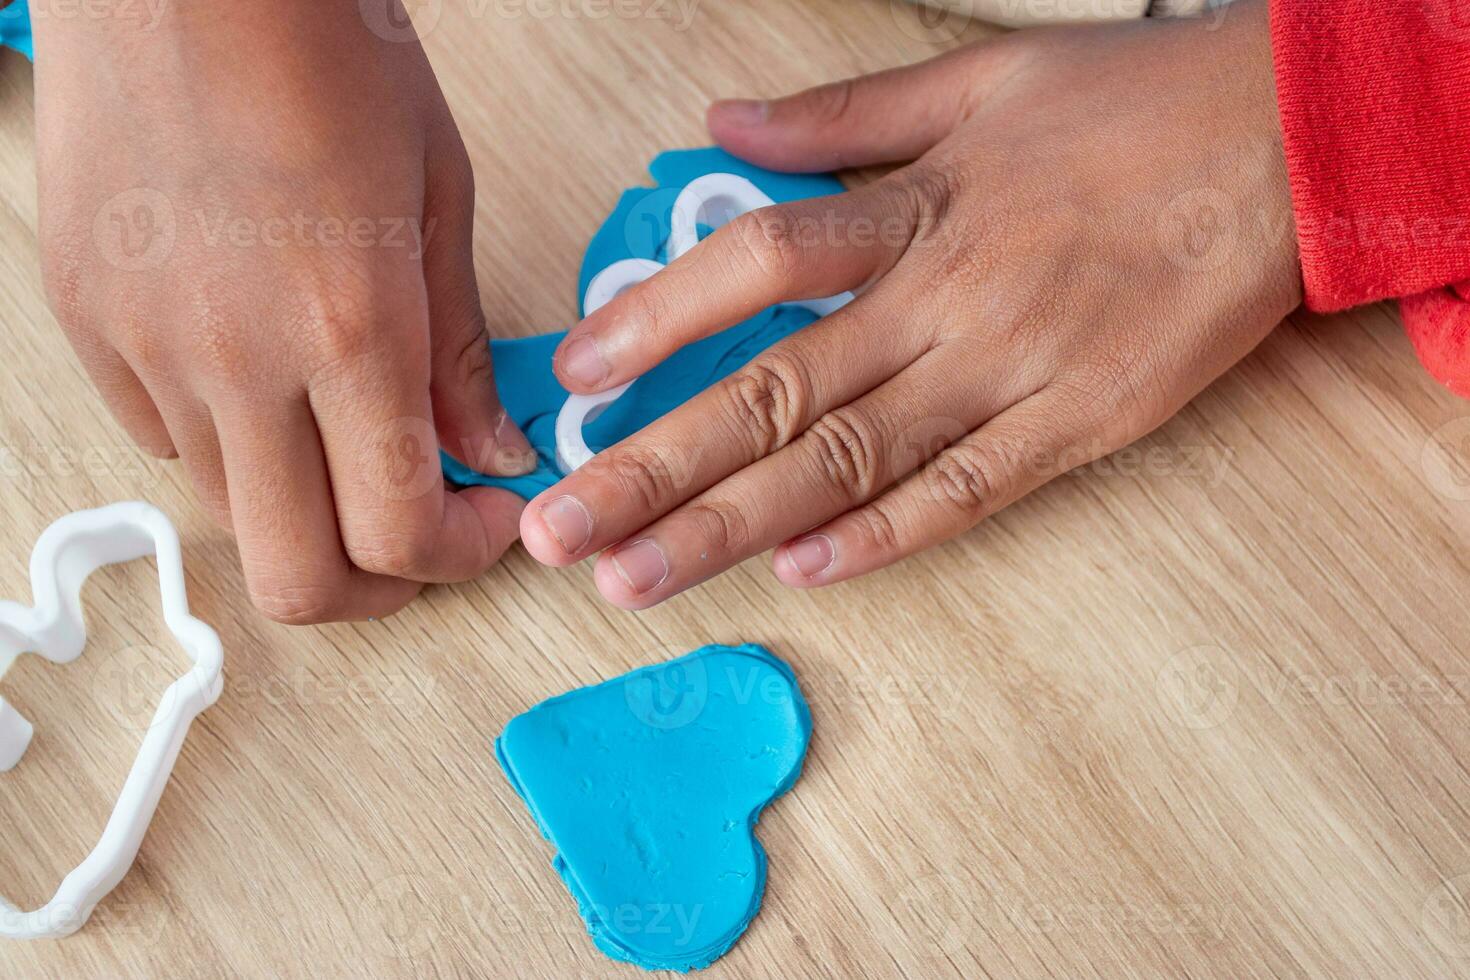 Kinder- Hände und Simulation Kochen Spielzeuge im das Küche Zähler foto